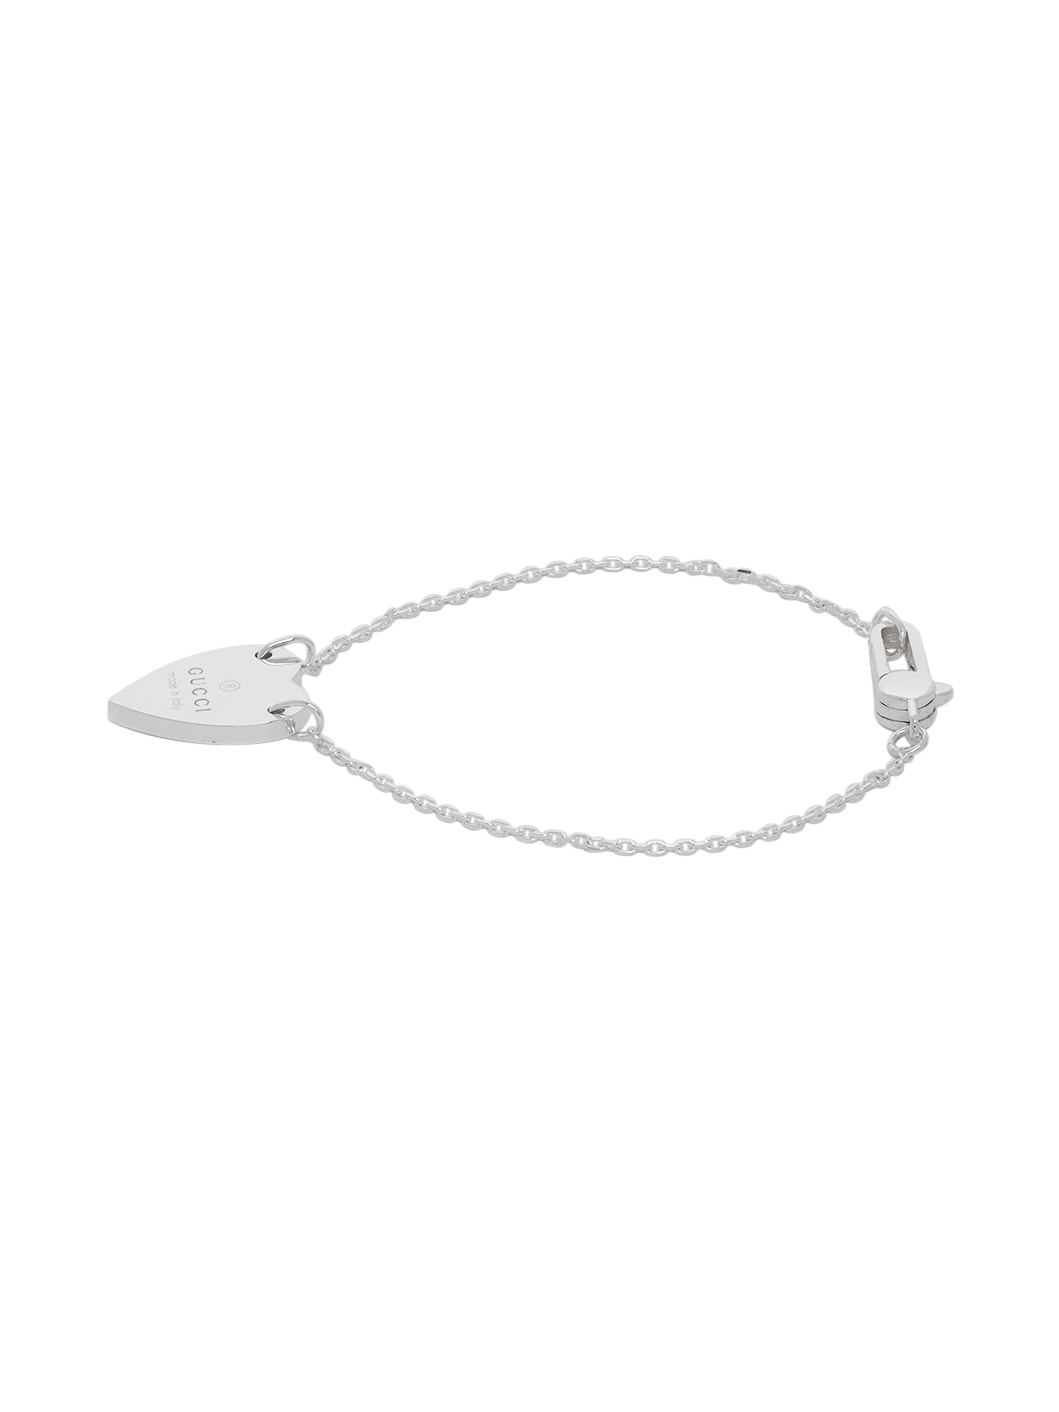 Silver Trademark Heart Bracelet - 3